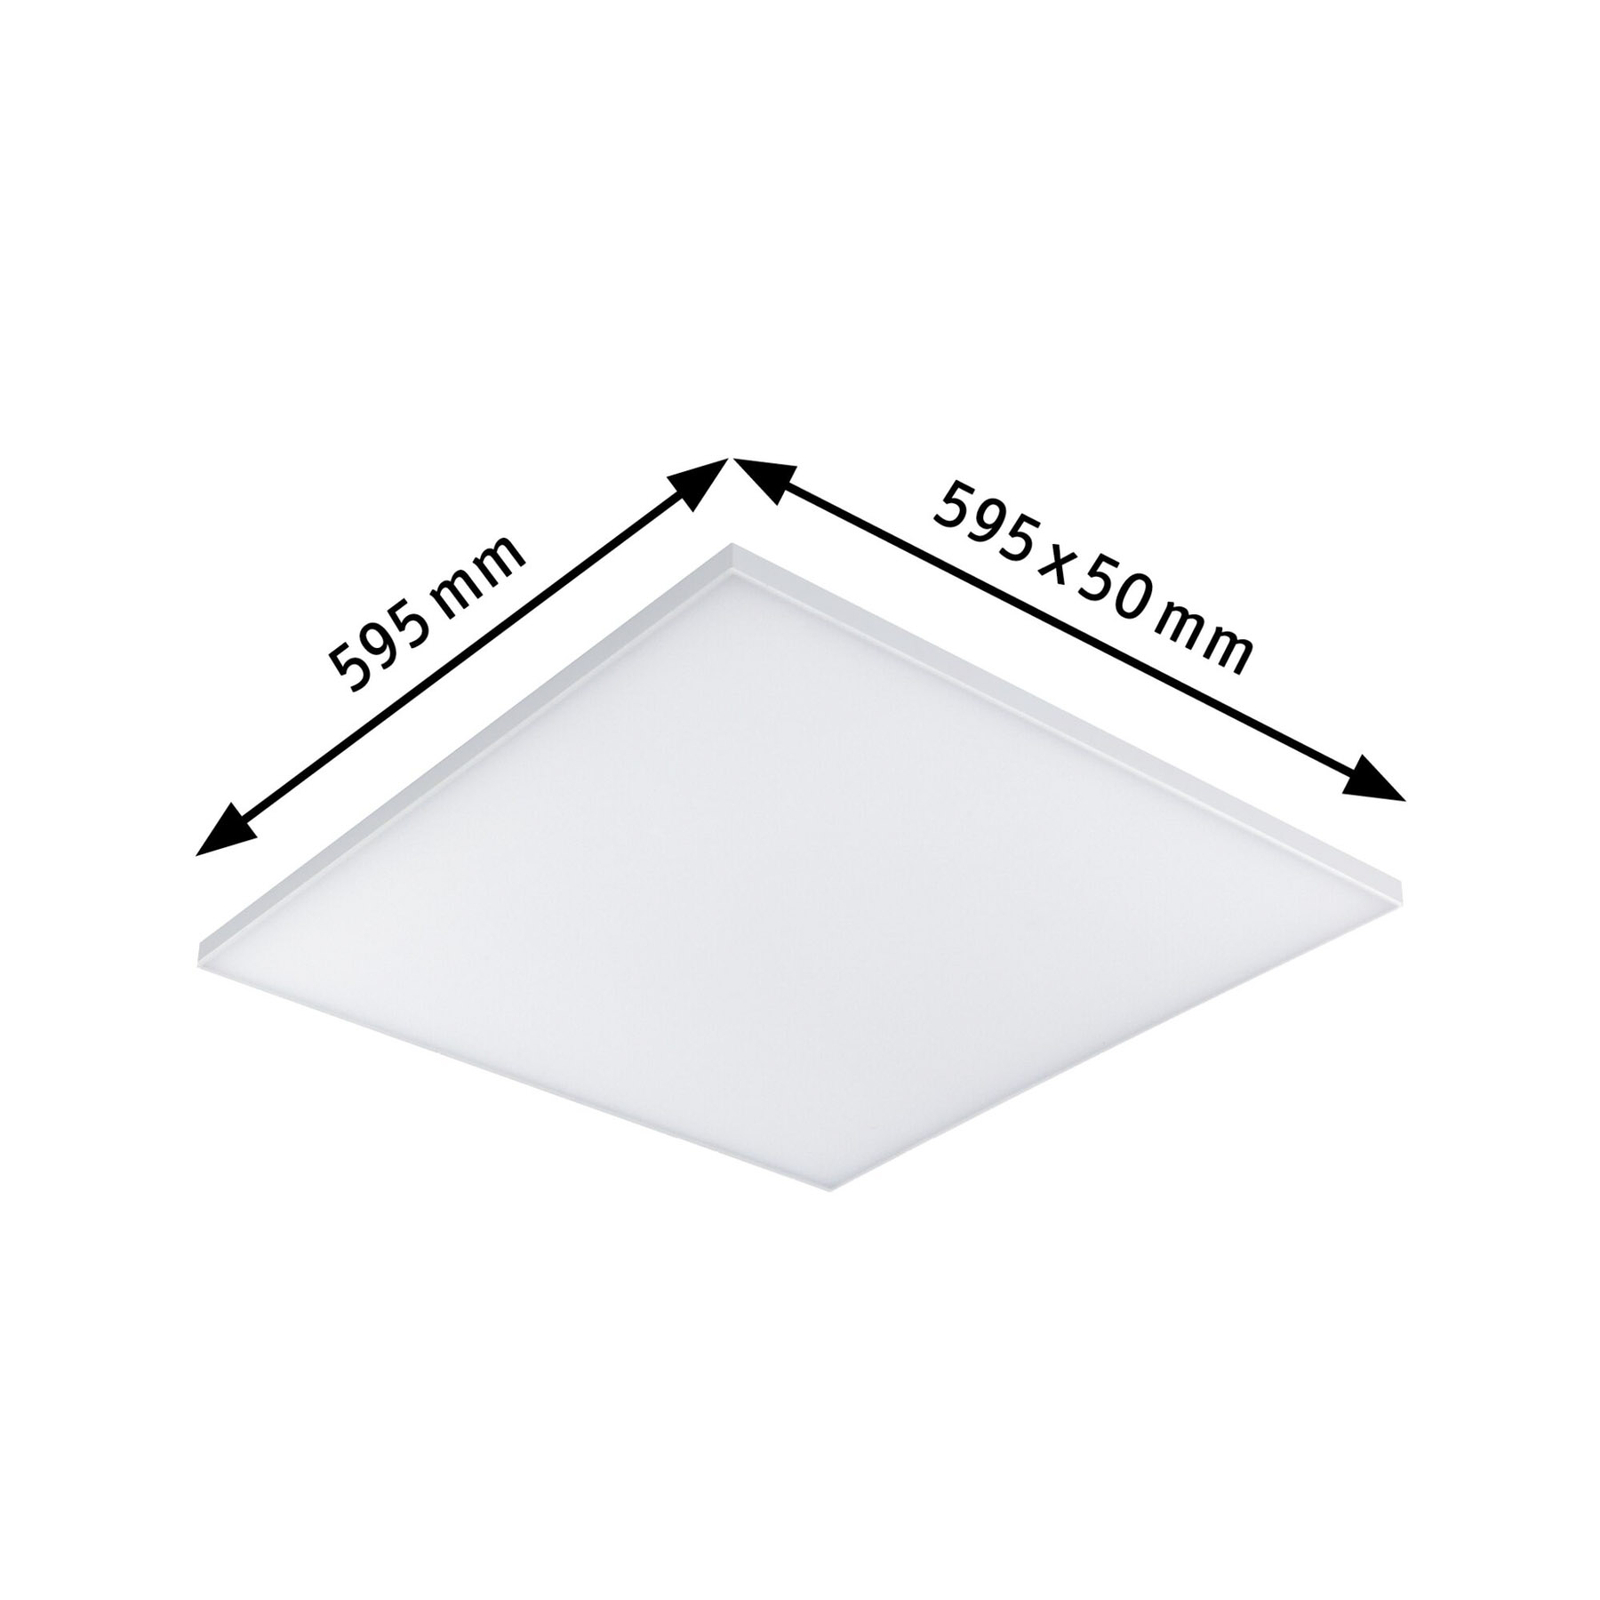 Paulmann Velora panneau LED 3-step-dim 59,5x59,5cm